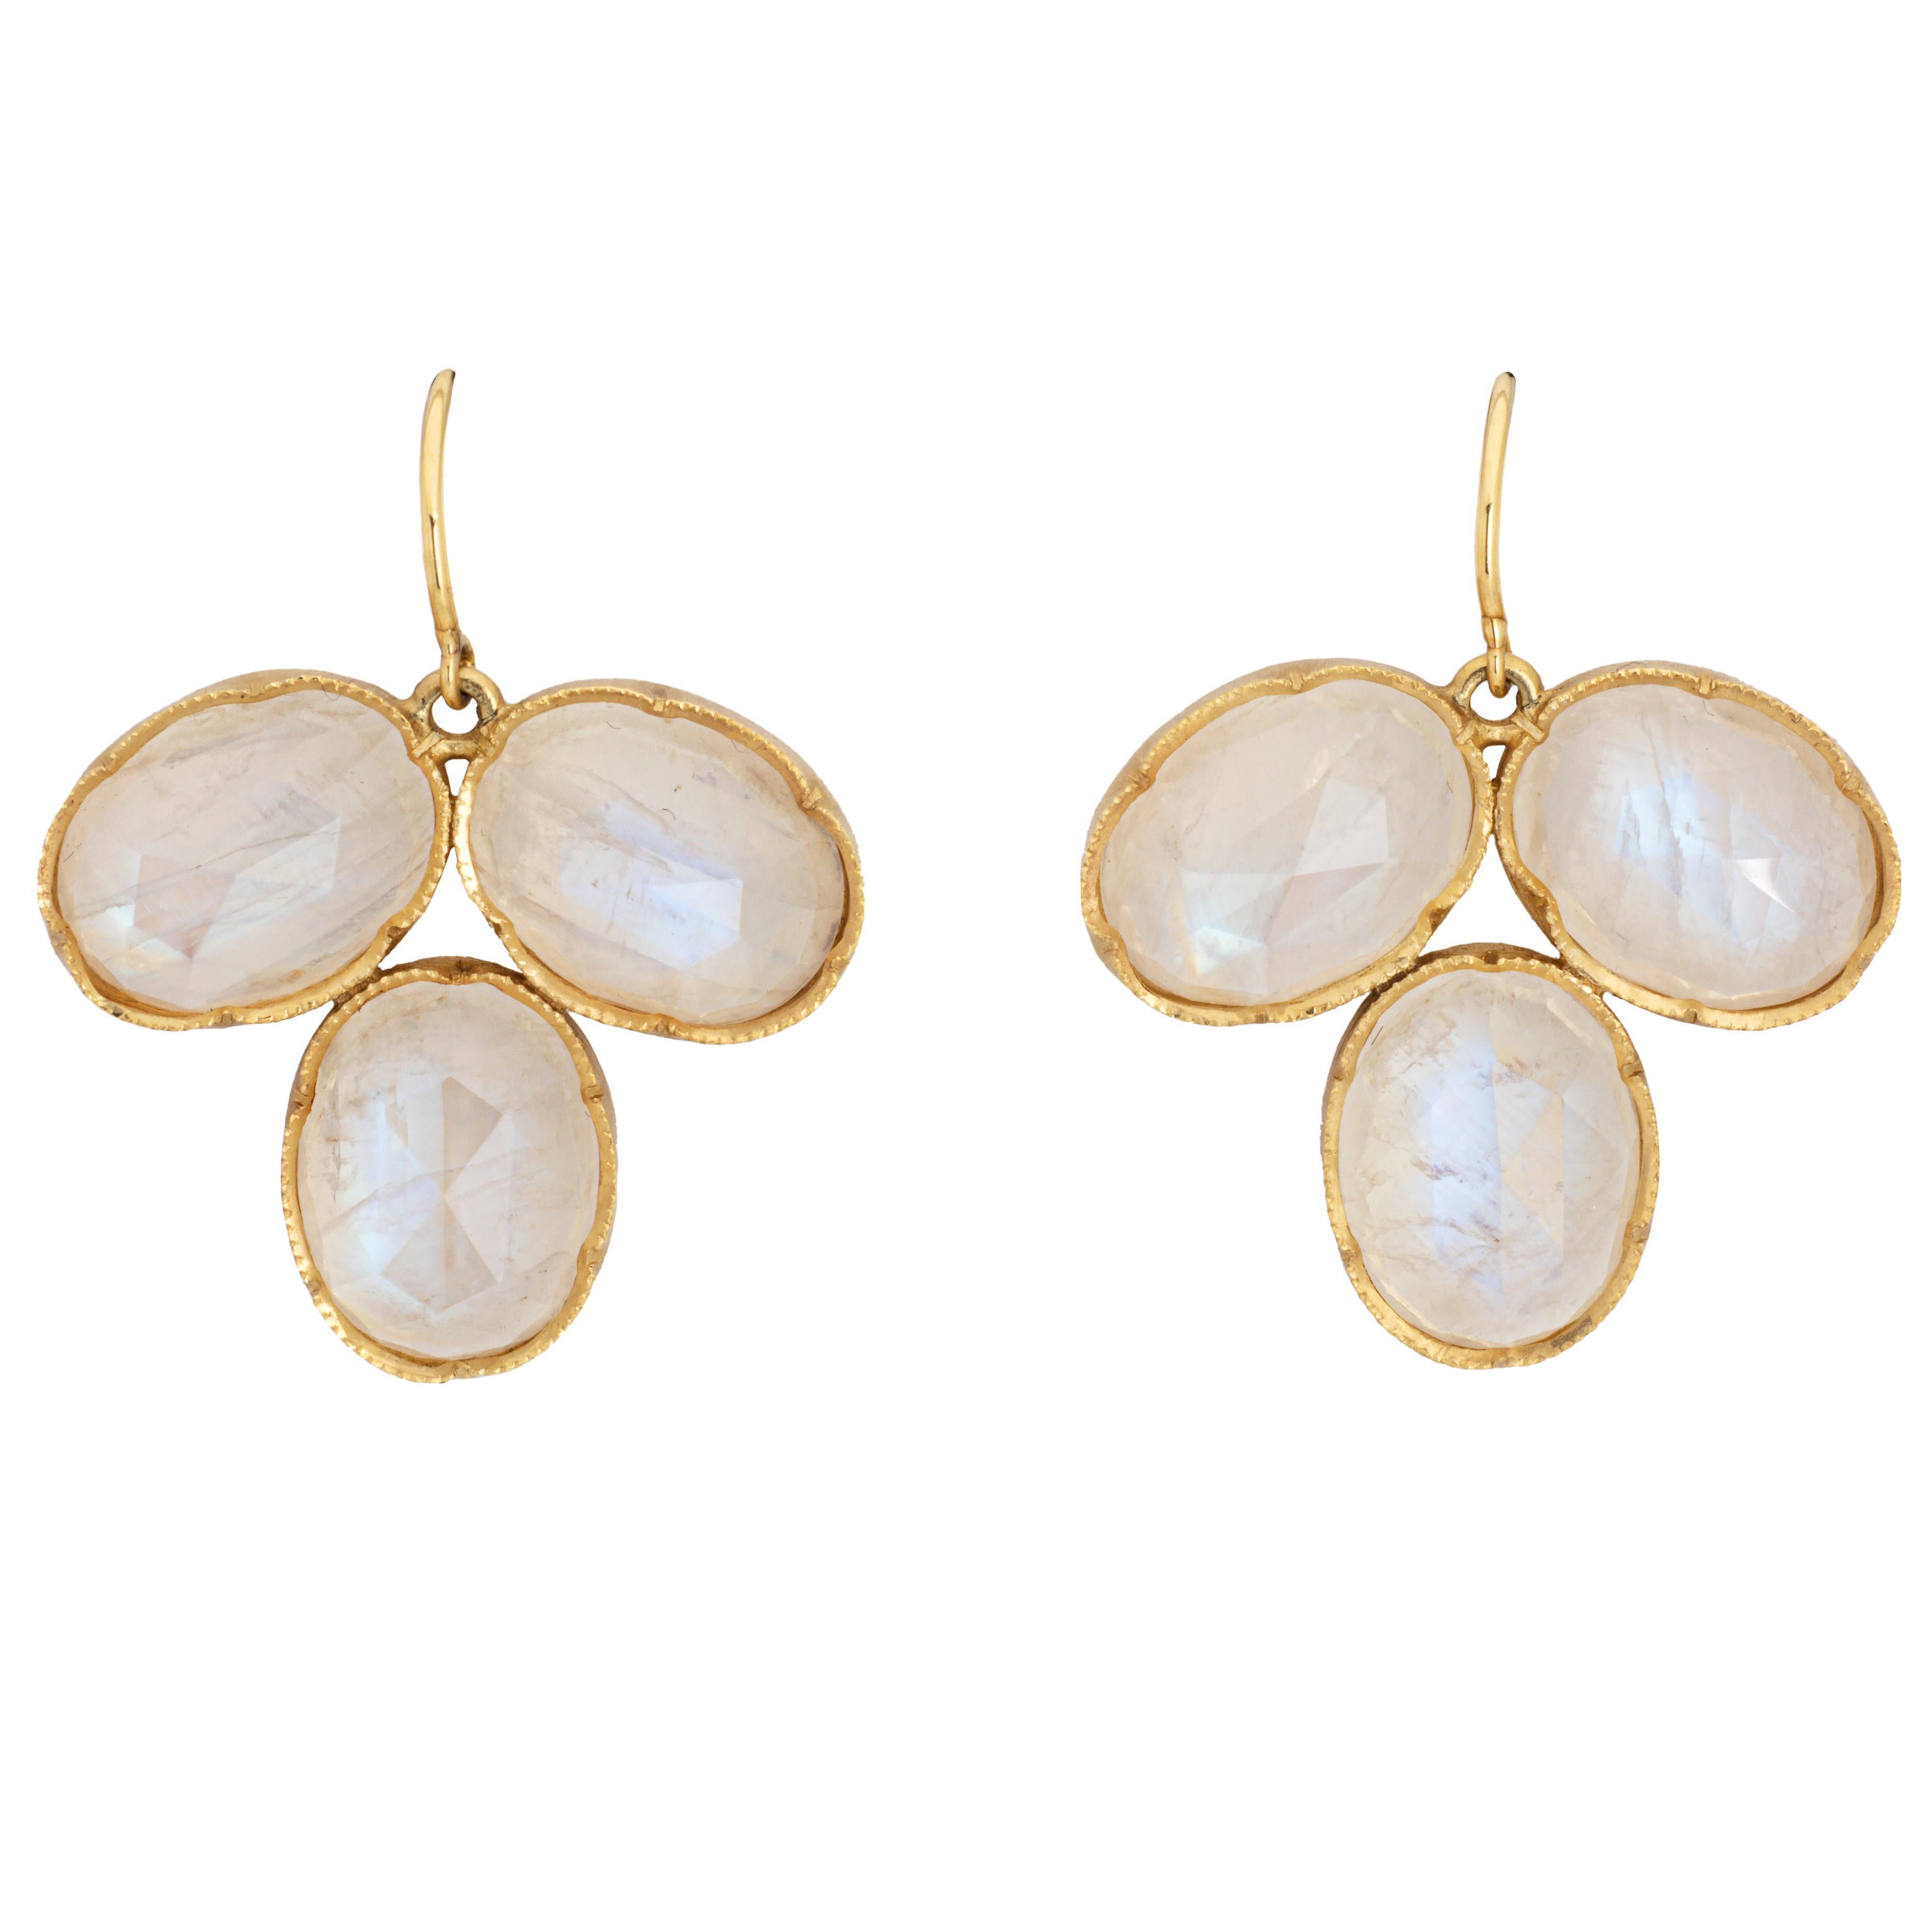 Irene Neuwirth Moonstone Earrings Estate 18k Gold 1" Drops Signed Fine Jewelry (Boucles d'oreilles en pierre de lune) 